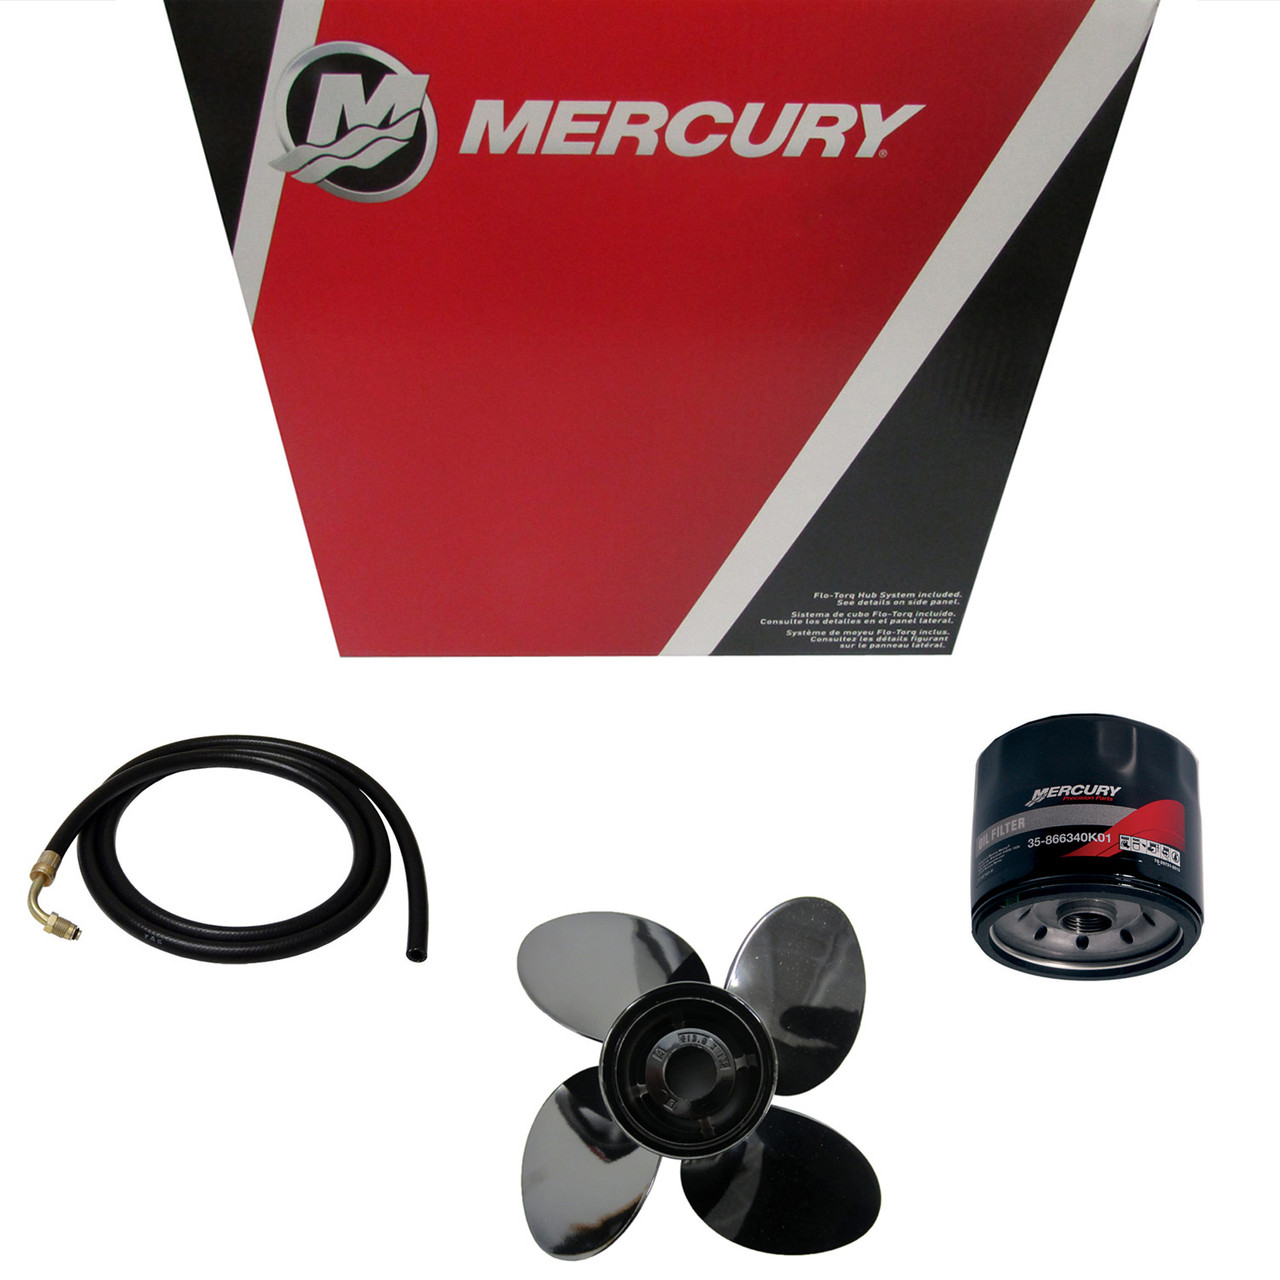 Mercury Marine / Mercruiser New OEM Demo 14.62X25 Rh, 857032PD1